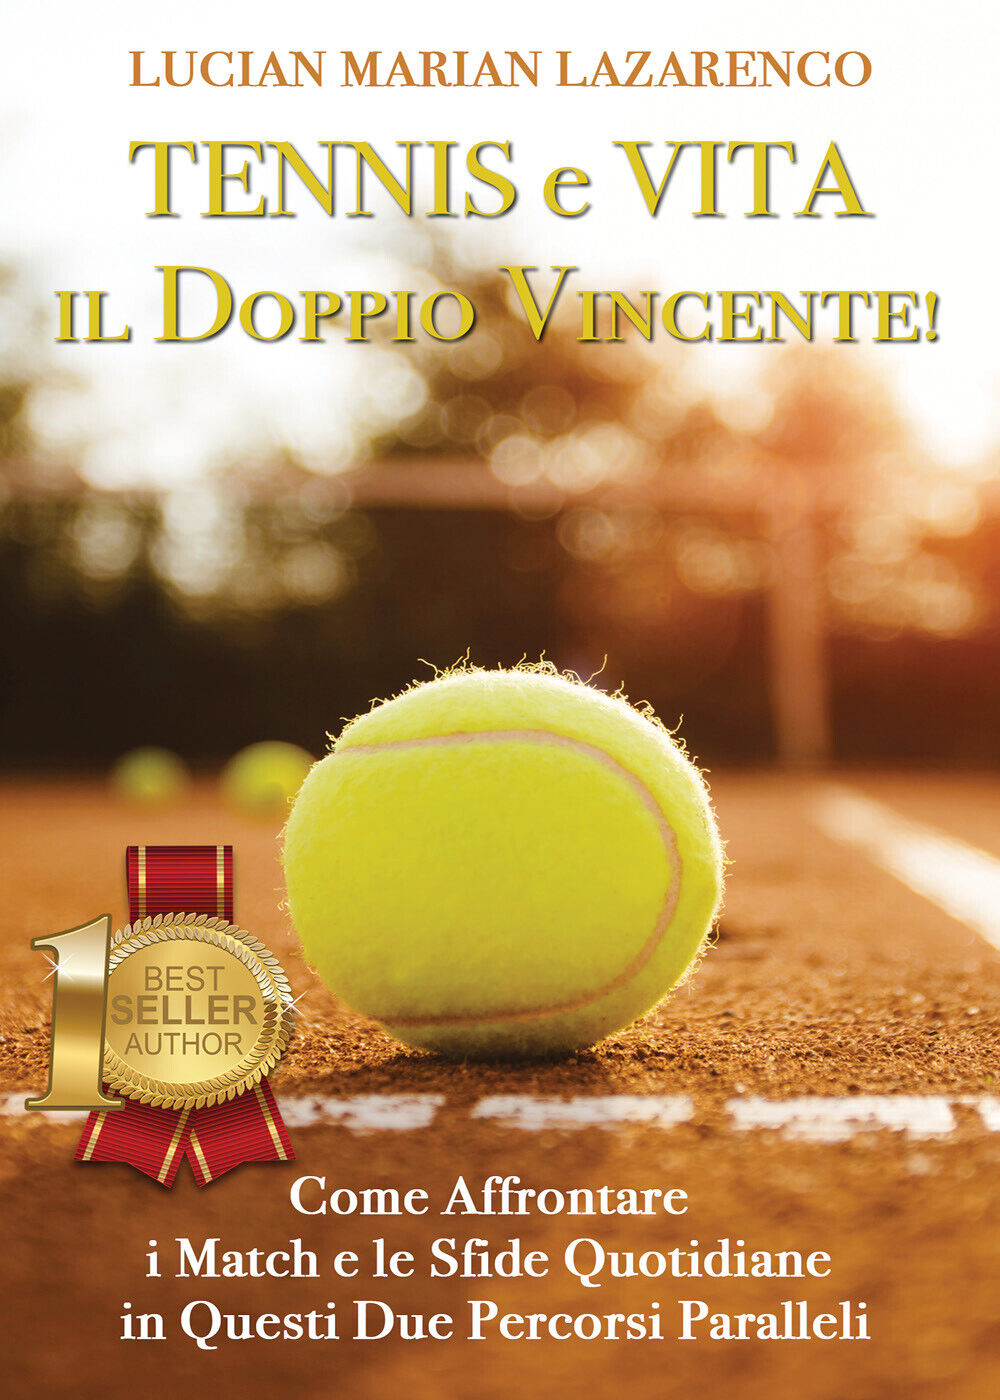 Tennis e vita: il doppio vincente! Come affrontare i match e le sfide quotidiane